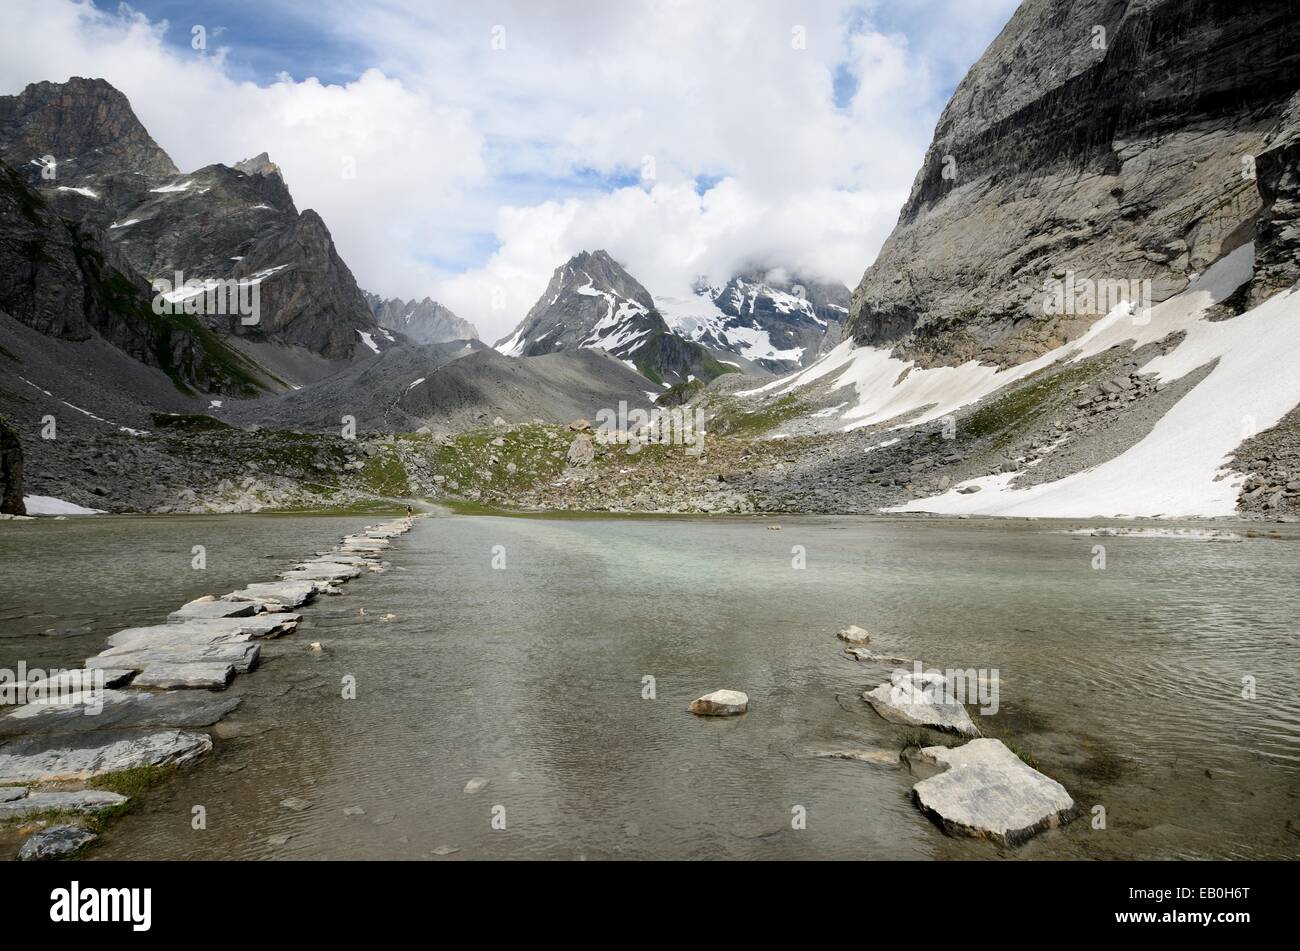 Paysage Biblic : Lac des Vaches dans le Parc National de la Vanoise, Alpes, France Paysage biblique des alpes vue sur la grande casse Banque D'Images